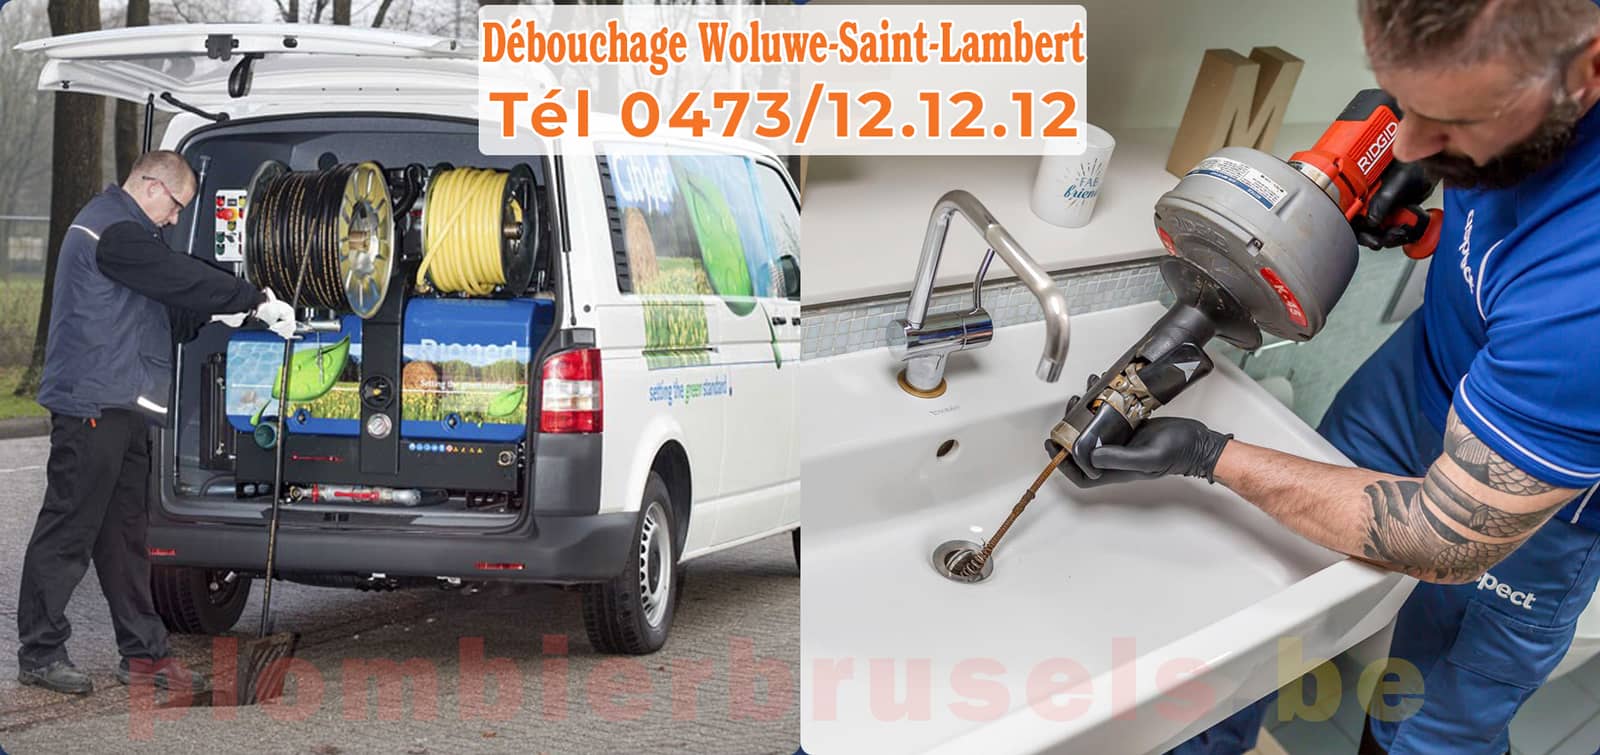 Plombier Brussels service de Débouchage Woluwe-Saint-Lambert d'égout tél 0473/12.12.12